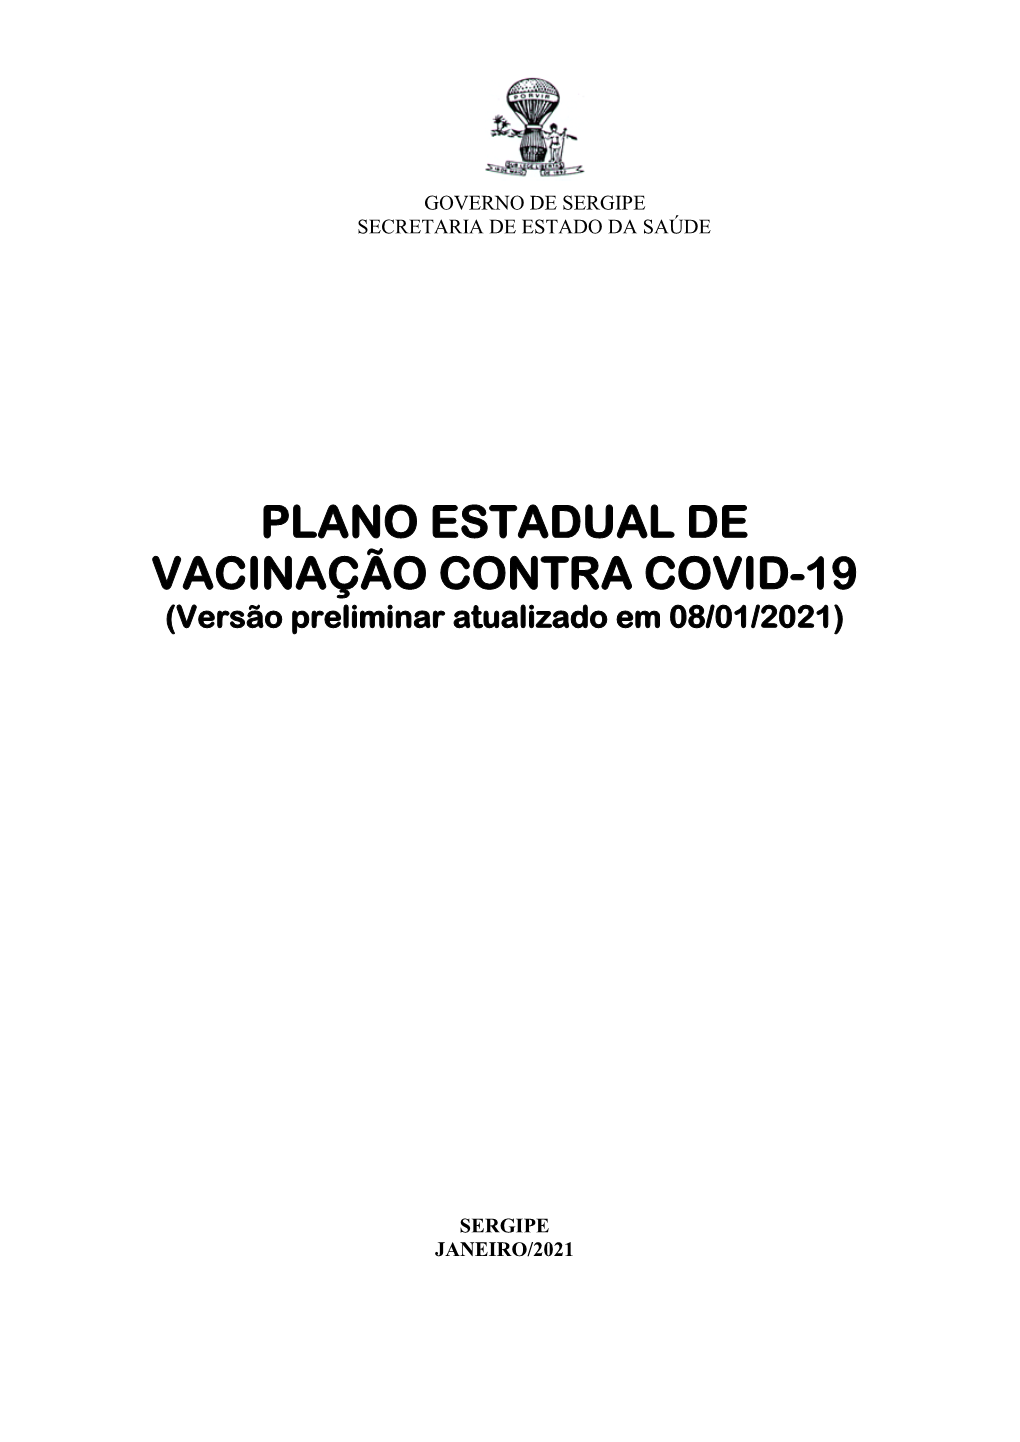 PLANO ESTADUAL DE VACINAÇÃO CONTRA COVID-19 (Versão Preliminar Atualizado Em 08/01/2021)